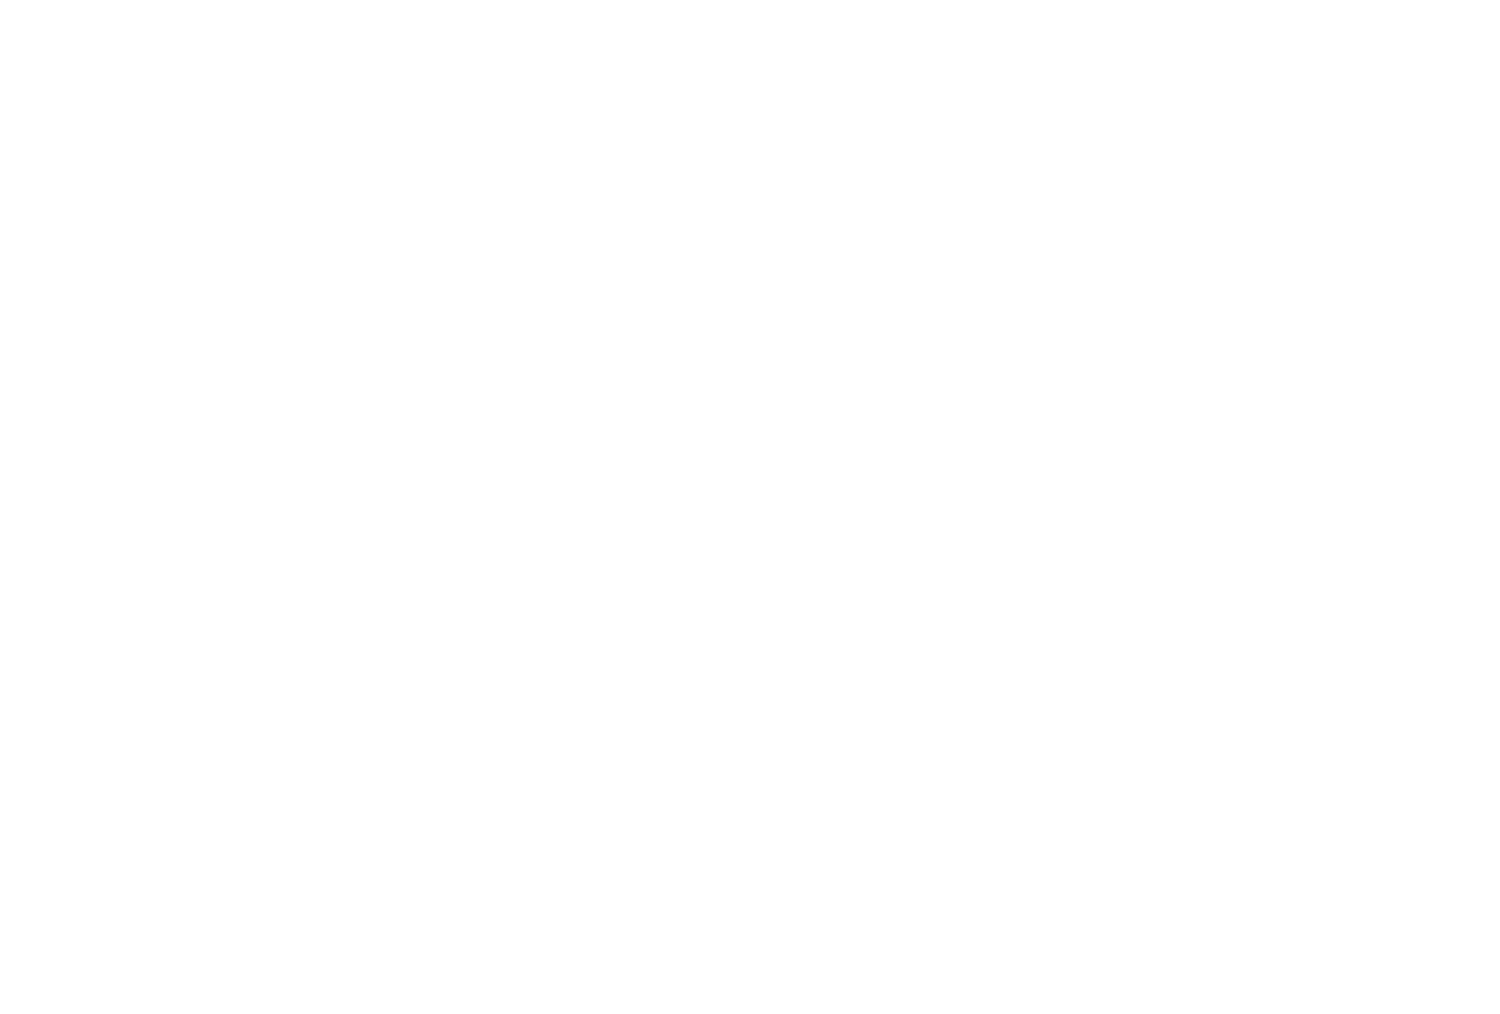 Georgia-Pacific Center